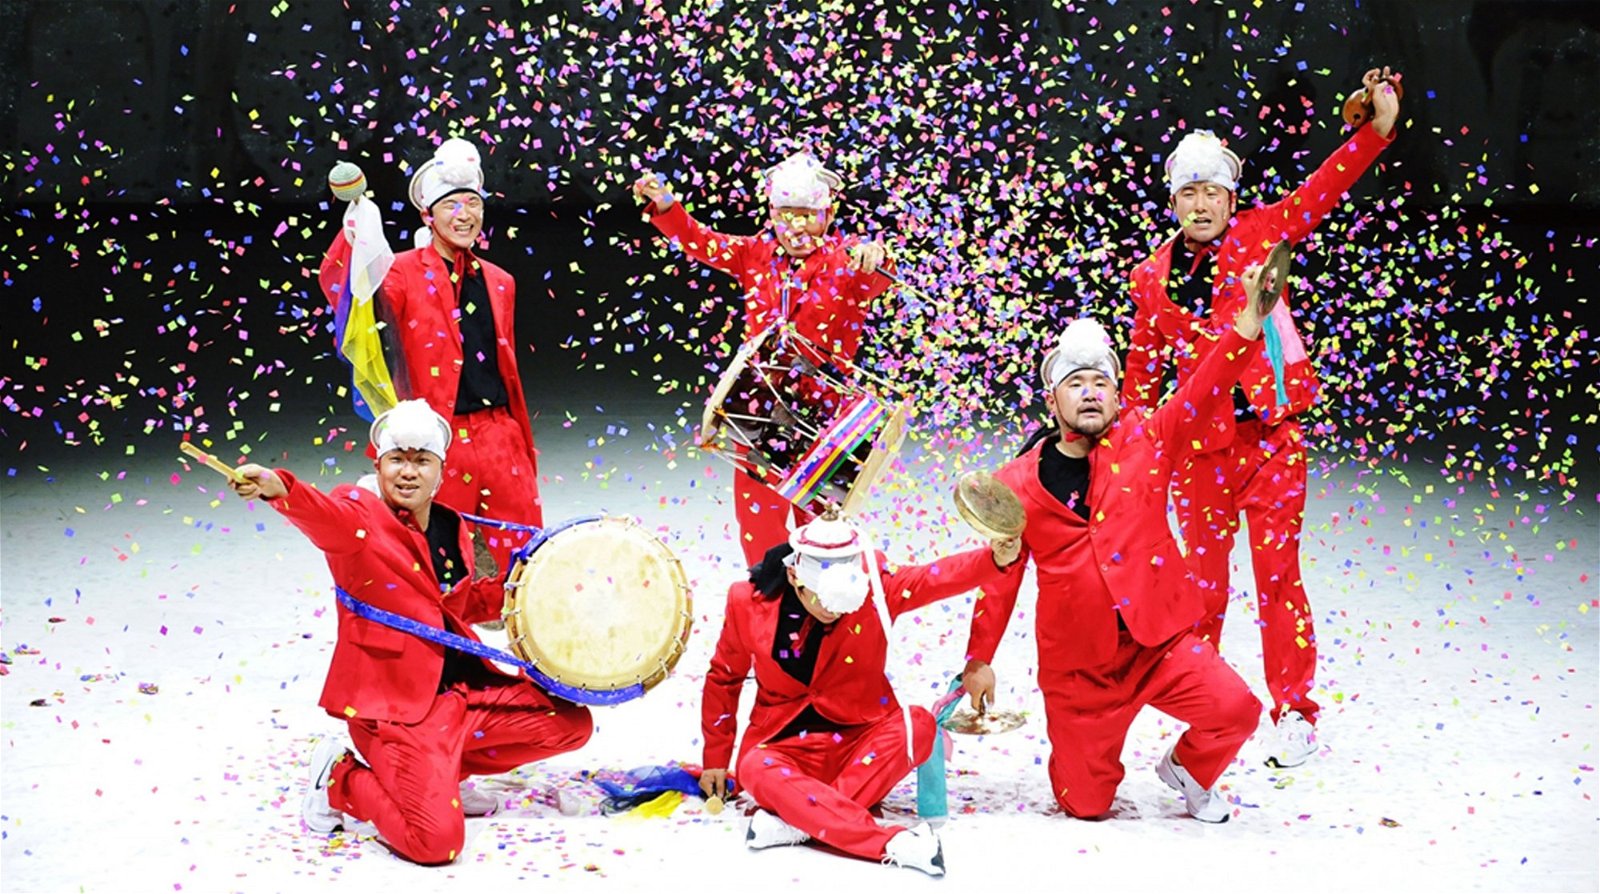 U-Hee以韩国民间的传统农乐与庆典音乐， 透过大锣、小锣、沙漏鼓、圆鼓等4种韩国传统乐器（统称四物）， 呈现韩国严谨、鲜明、活力十足的击乐风格， 展现人与天地之间的阴阳和谐关系。